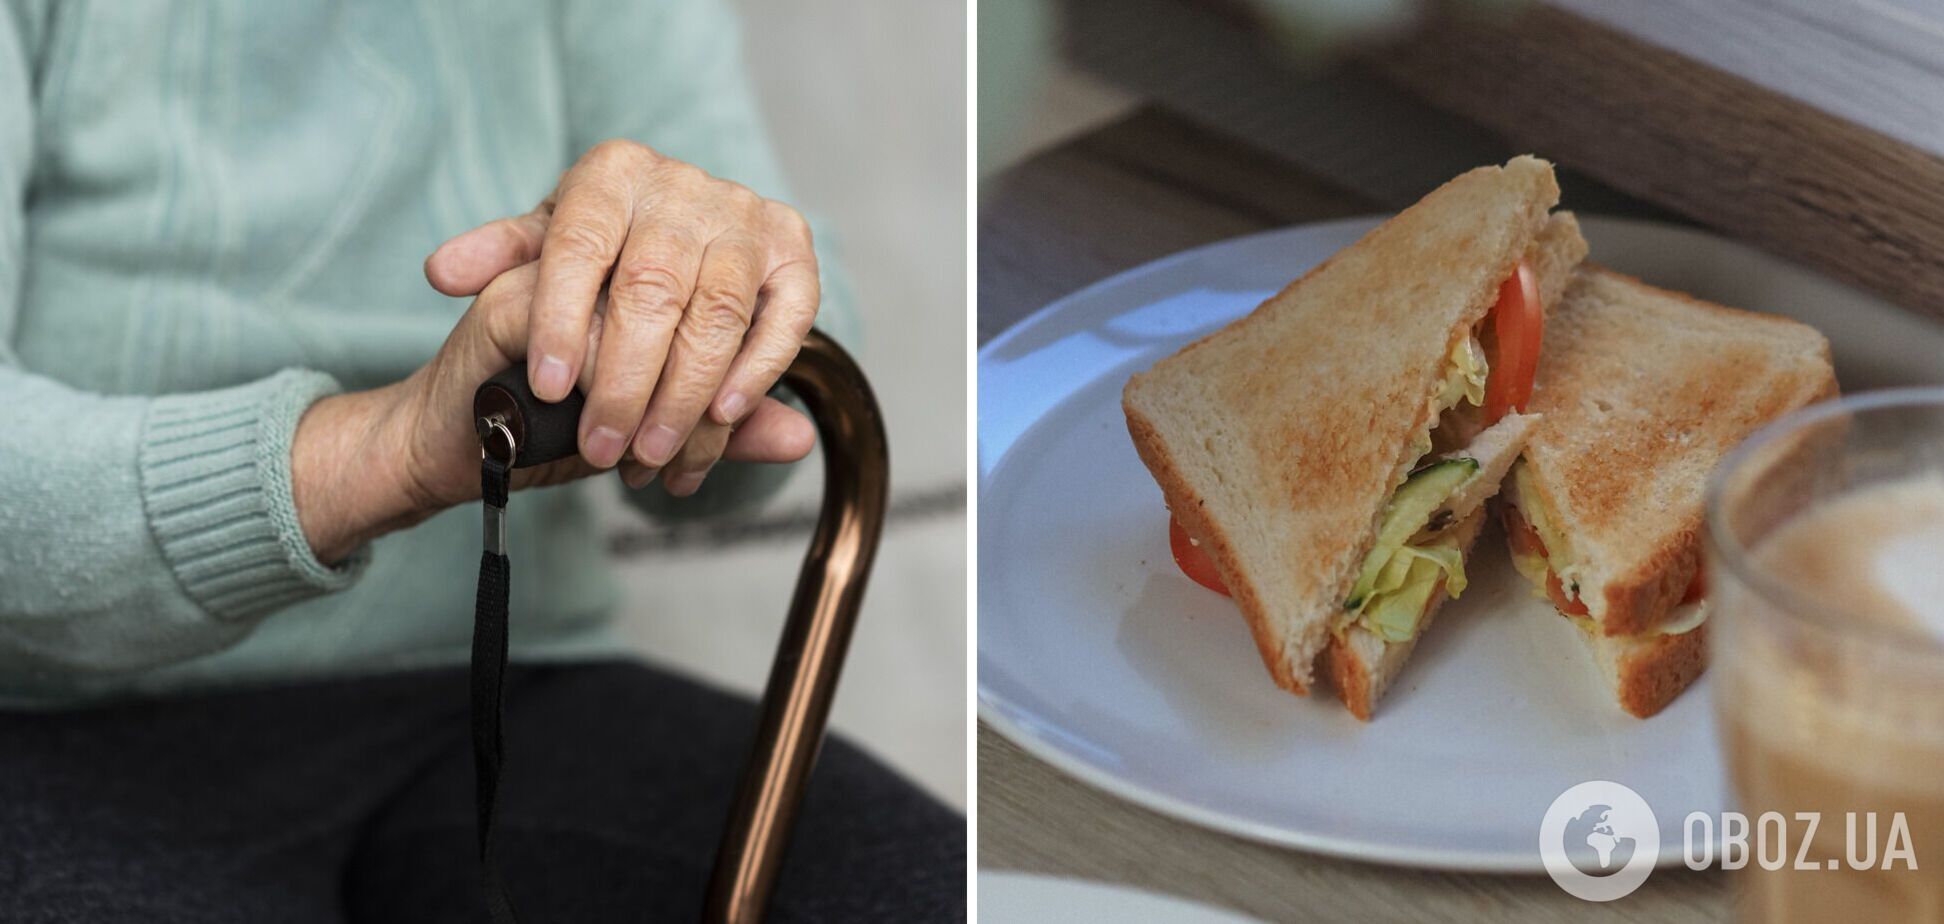 Урок для туристів: пенсіонерку оштрафували в аеропорту на $3000 через бутерброд із куркою та салатом